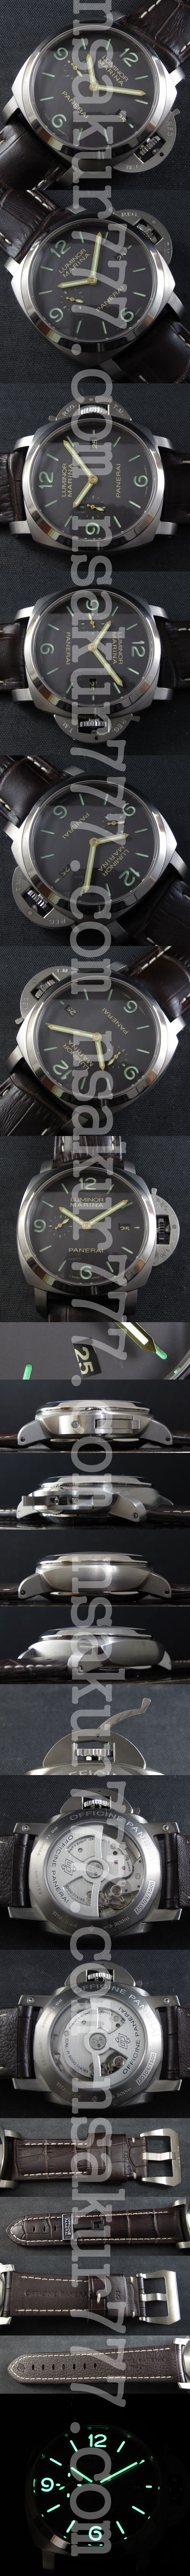 スーパーコピー時計パネライ ルミノール マリーナ PAM00351　，ハイエンドモデル - ウインドウを閉じる